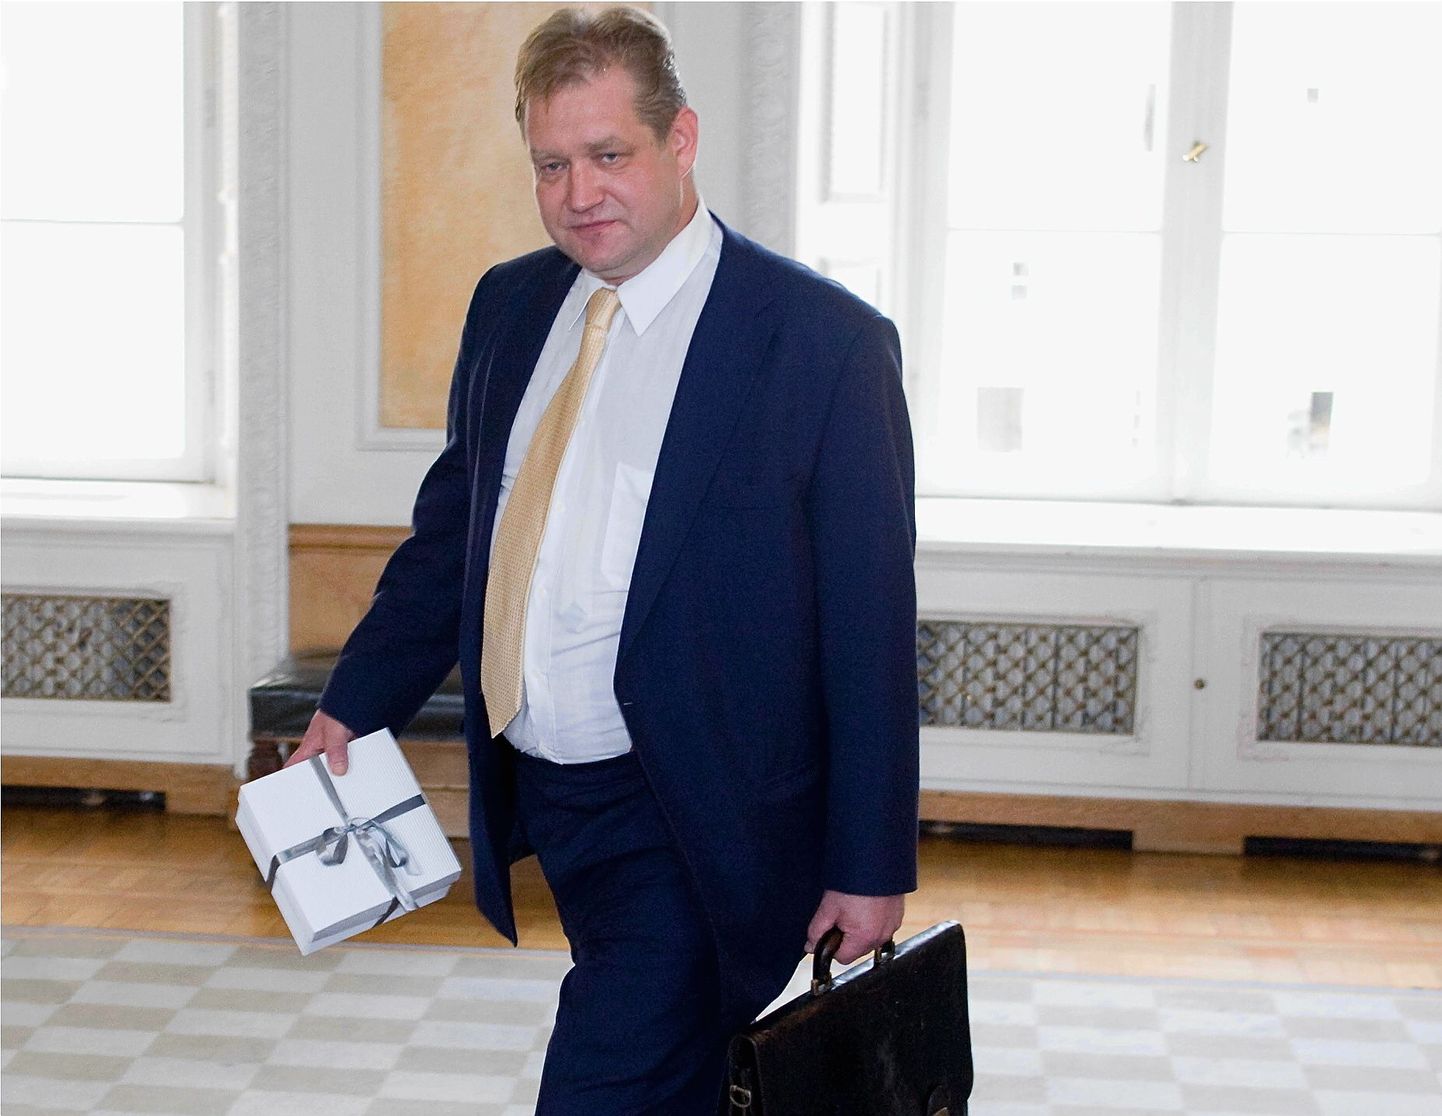 Rahandusminister Ivari Padar üleeile         Tallinnas Toompeal riigikogu ruumides peetud valitsusliidu nõukogu koosoleku järel. Sedapuhku ei hoidnud ta käes järjekordset versiooni riigieelarvest, vaid kingi-tust eelmisel nädalal 55. sünnipäeva          tähistanud erakonnakaaslasest sõbrale, riigikogu liikmele Eiki Nestorile.